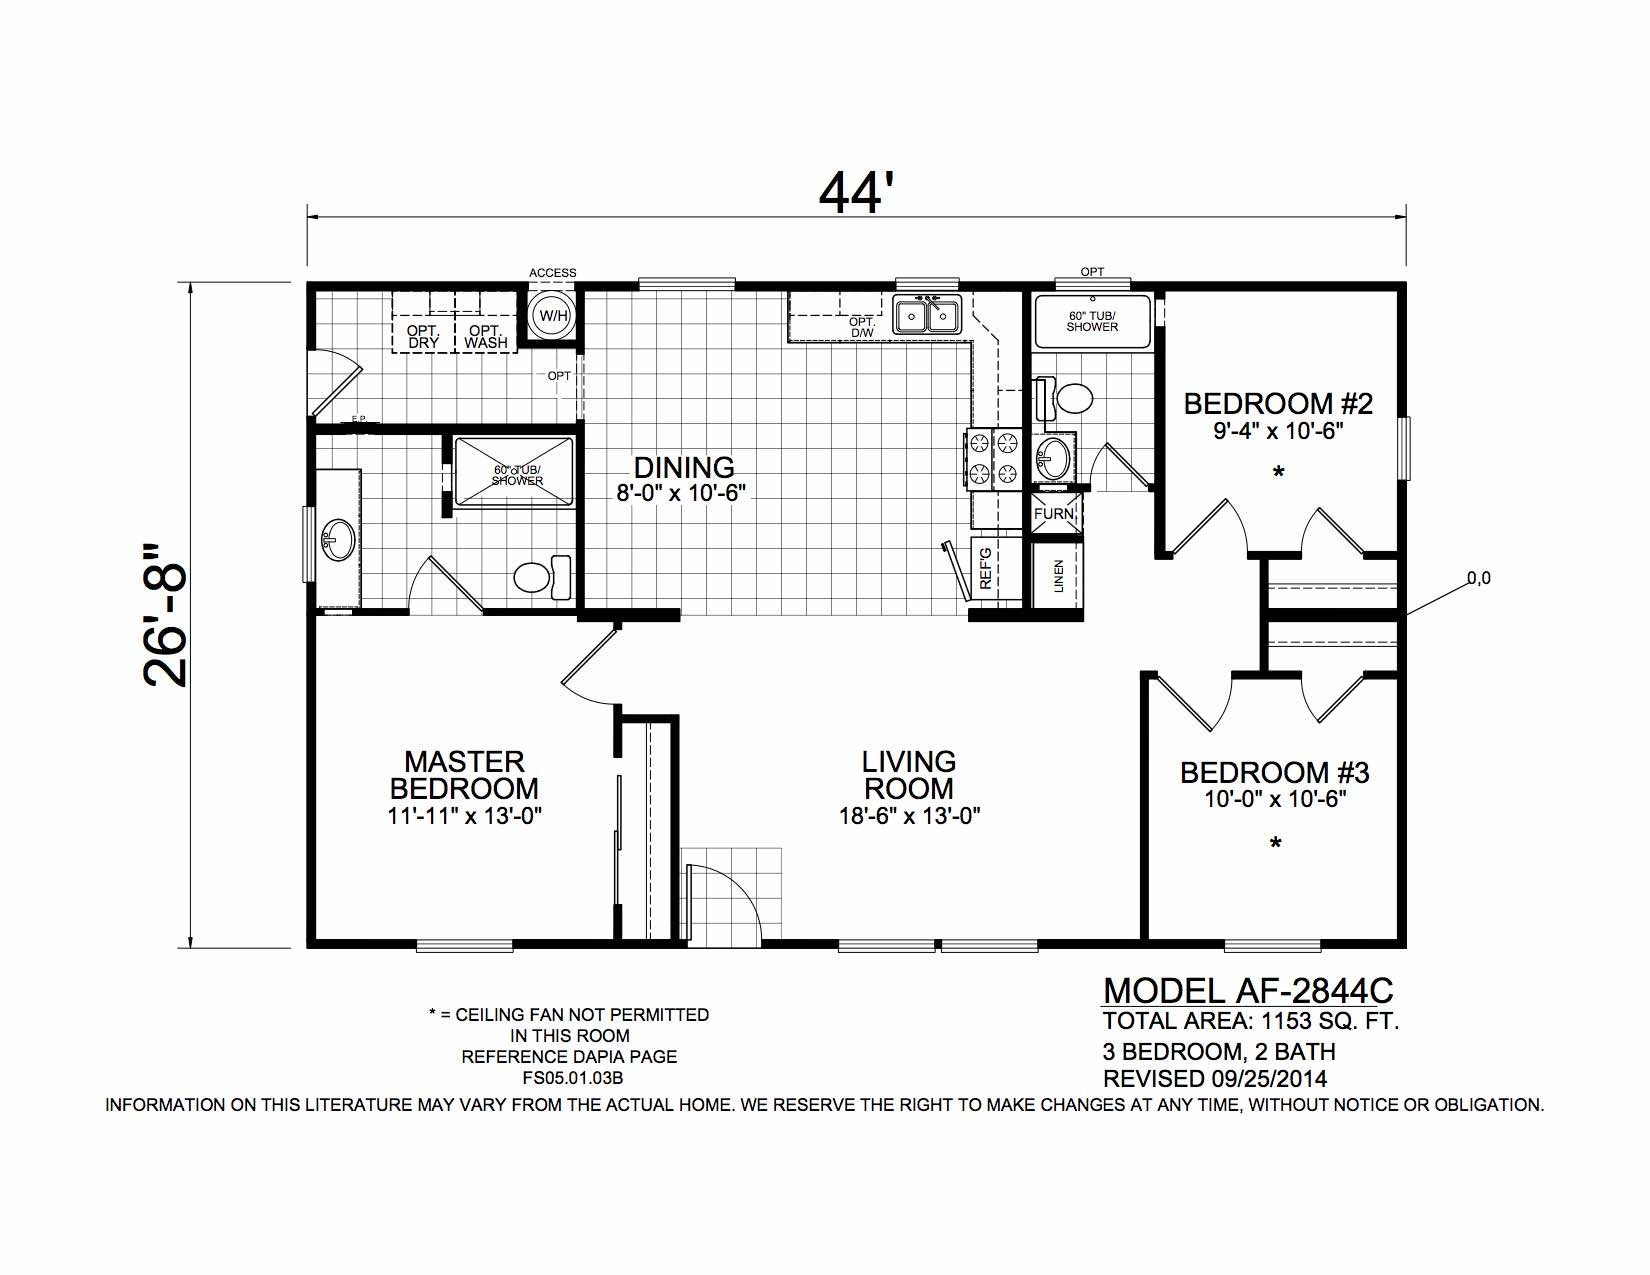 Homes Direct Modular Homes - Model AF2844C - Floorplan